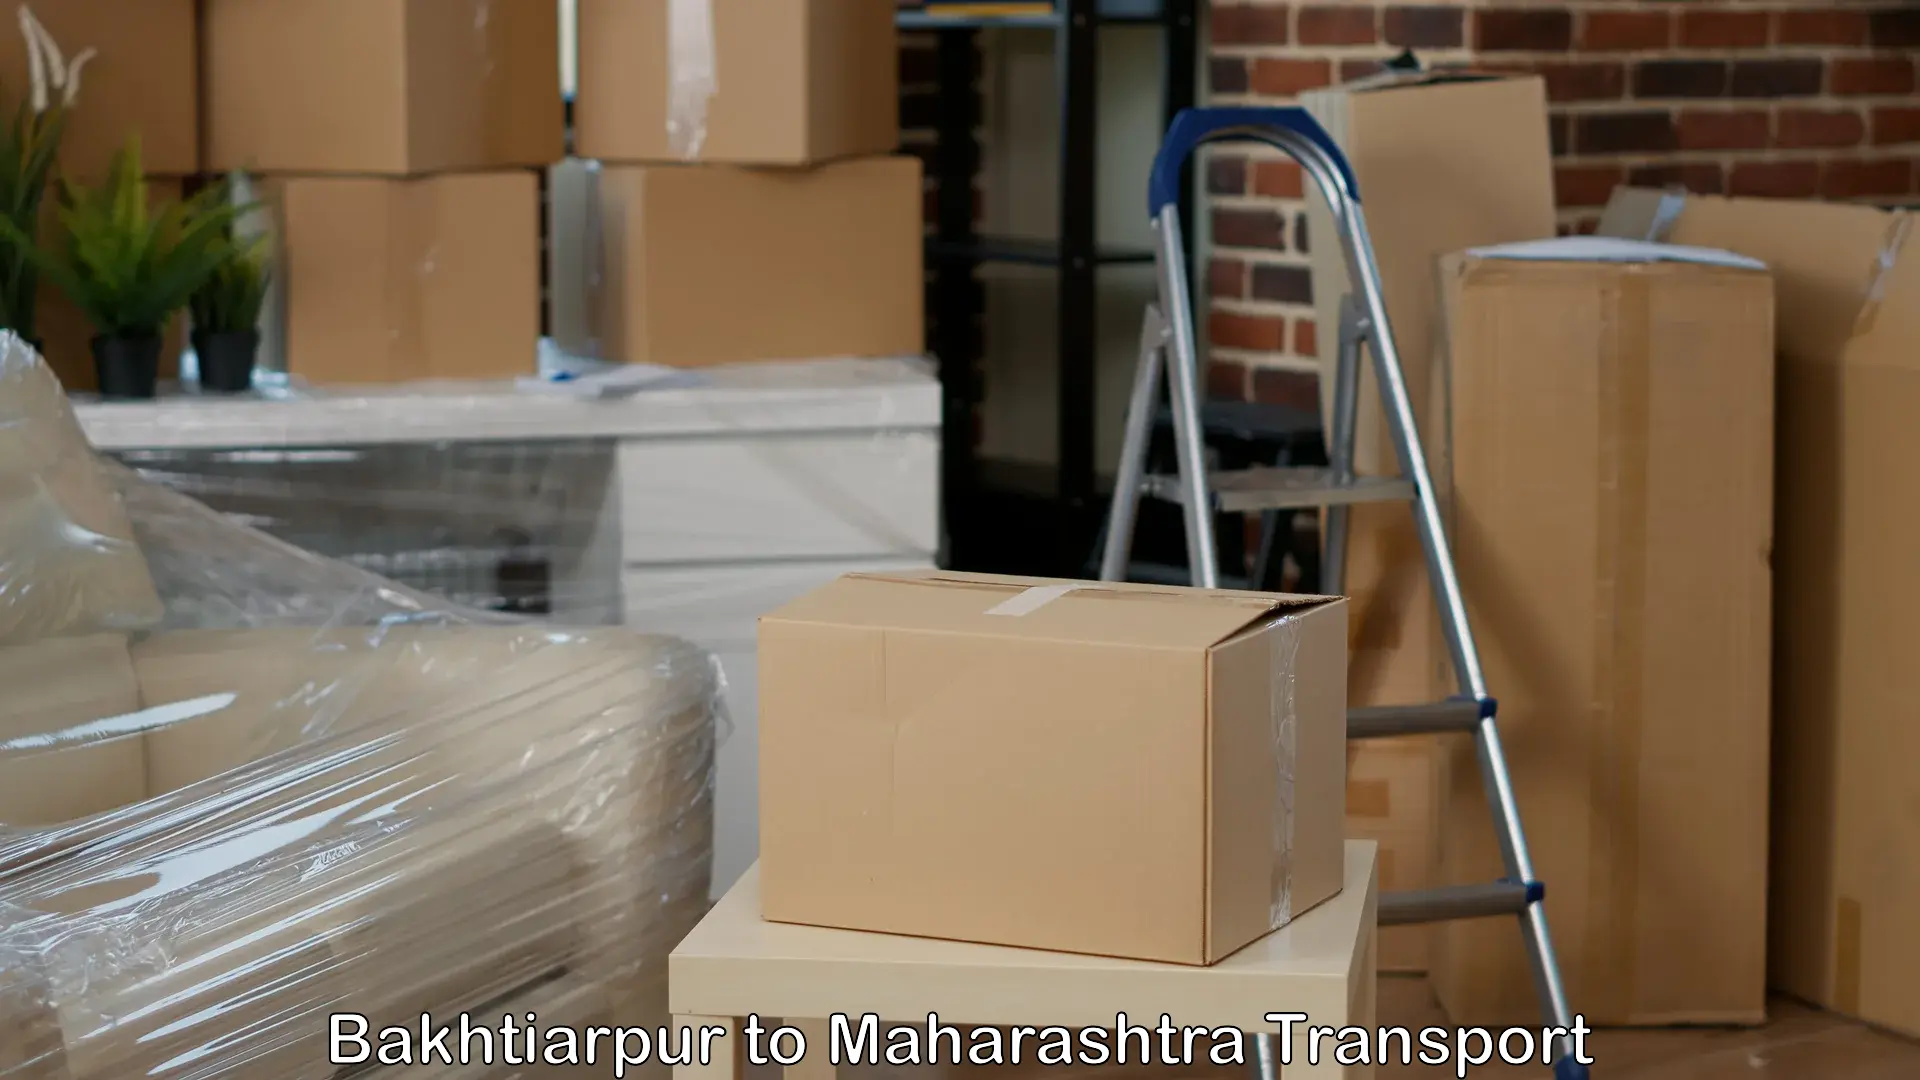 Goods delivery service Bakhtiarpur to Maharashtra